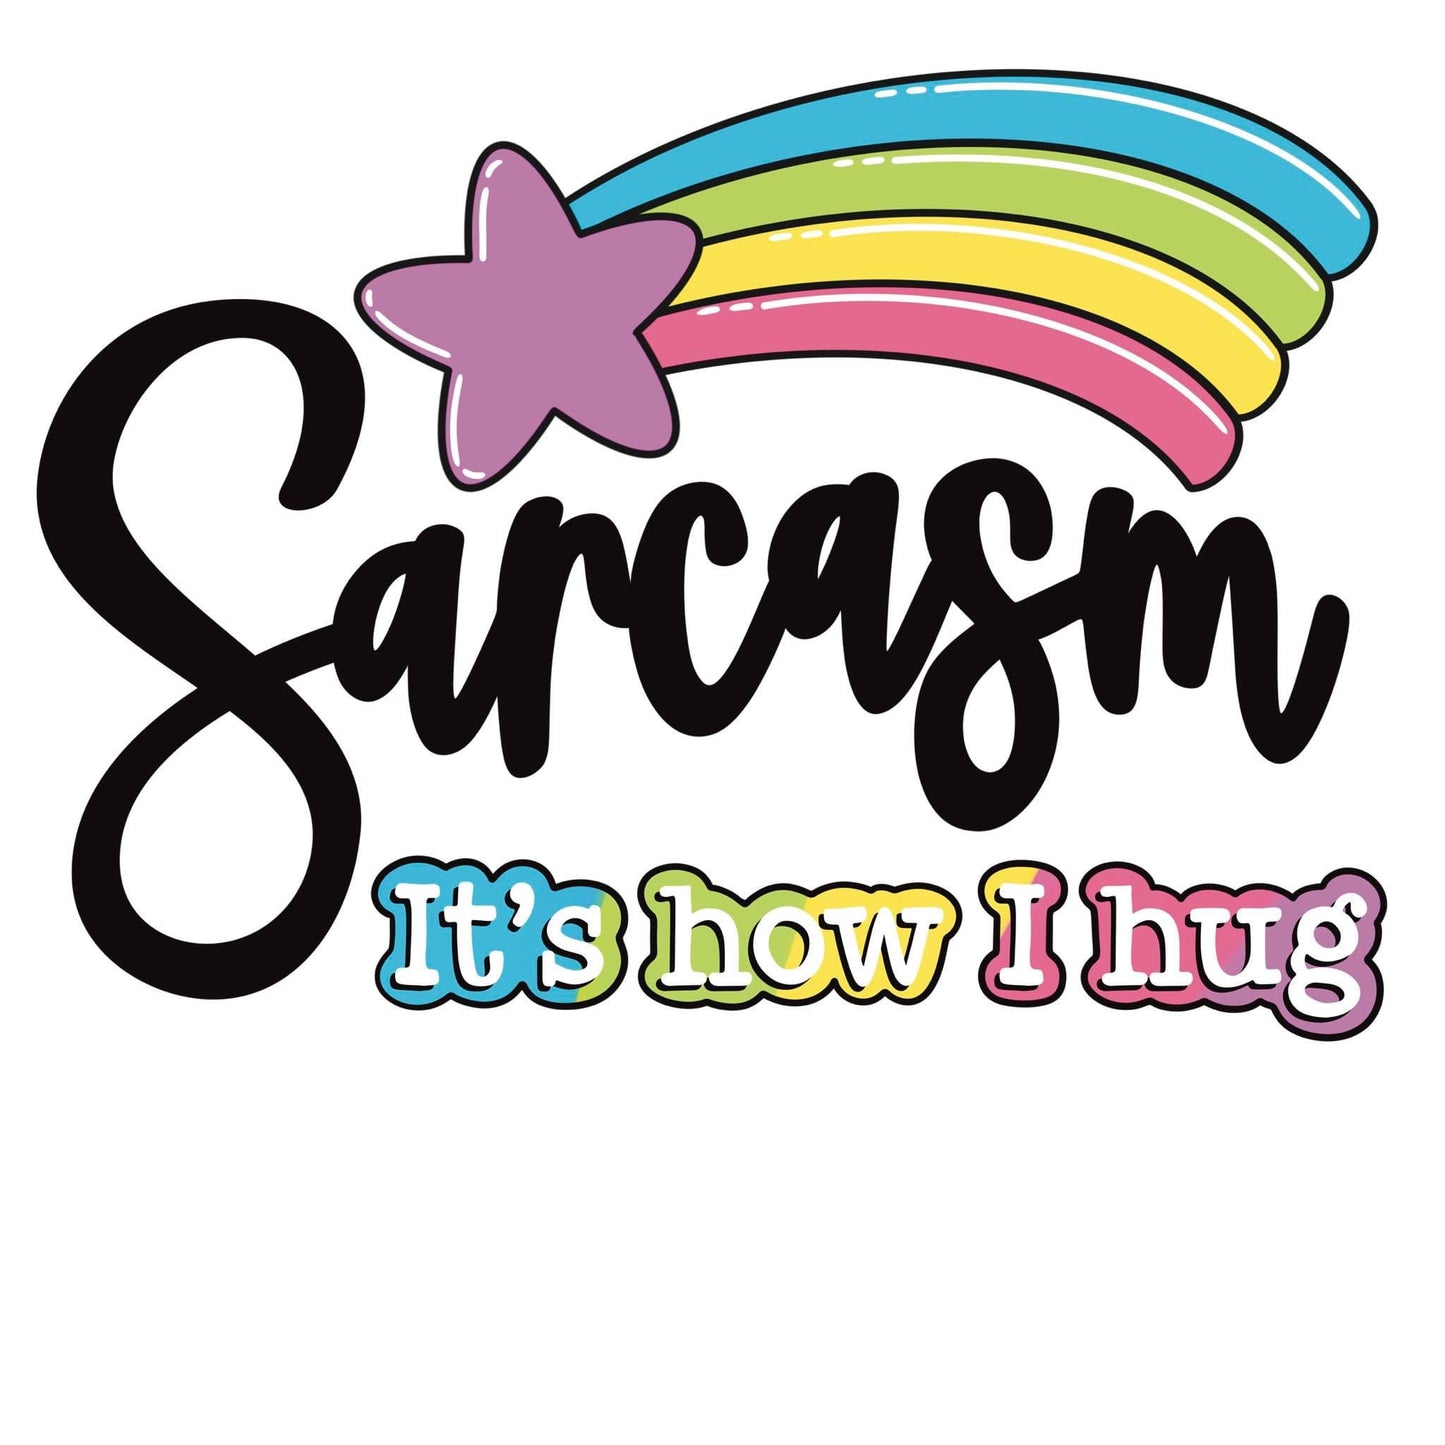 Sarcasm is how i hug, Coaster, Cushion, Water Bottle, Keyring, Travel Mug,